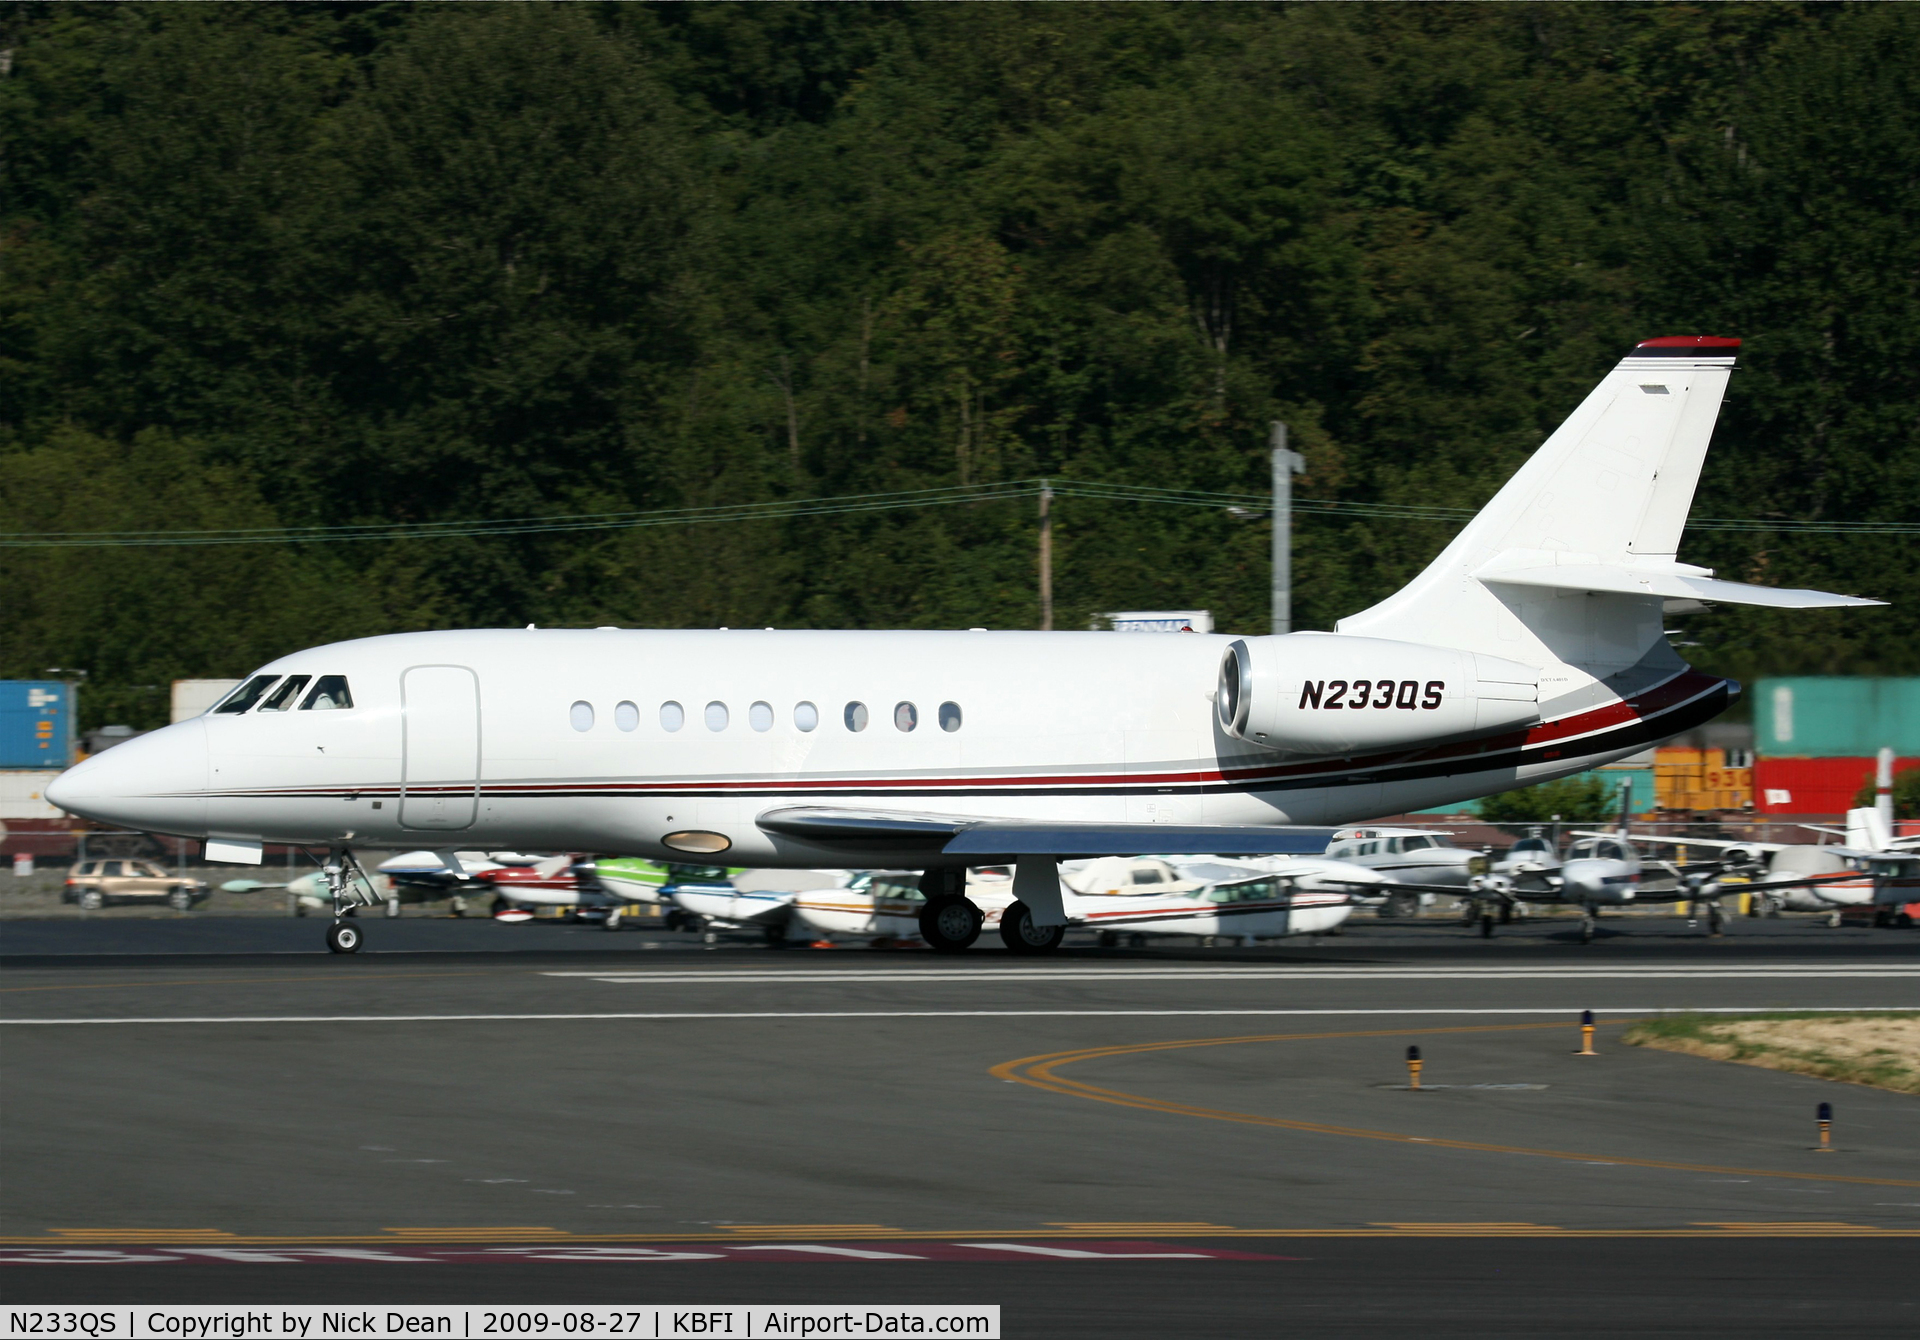 N233QS, 2006 Dassault Falcon 2000EX C/N 91, KBFI